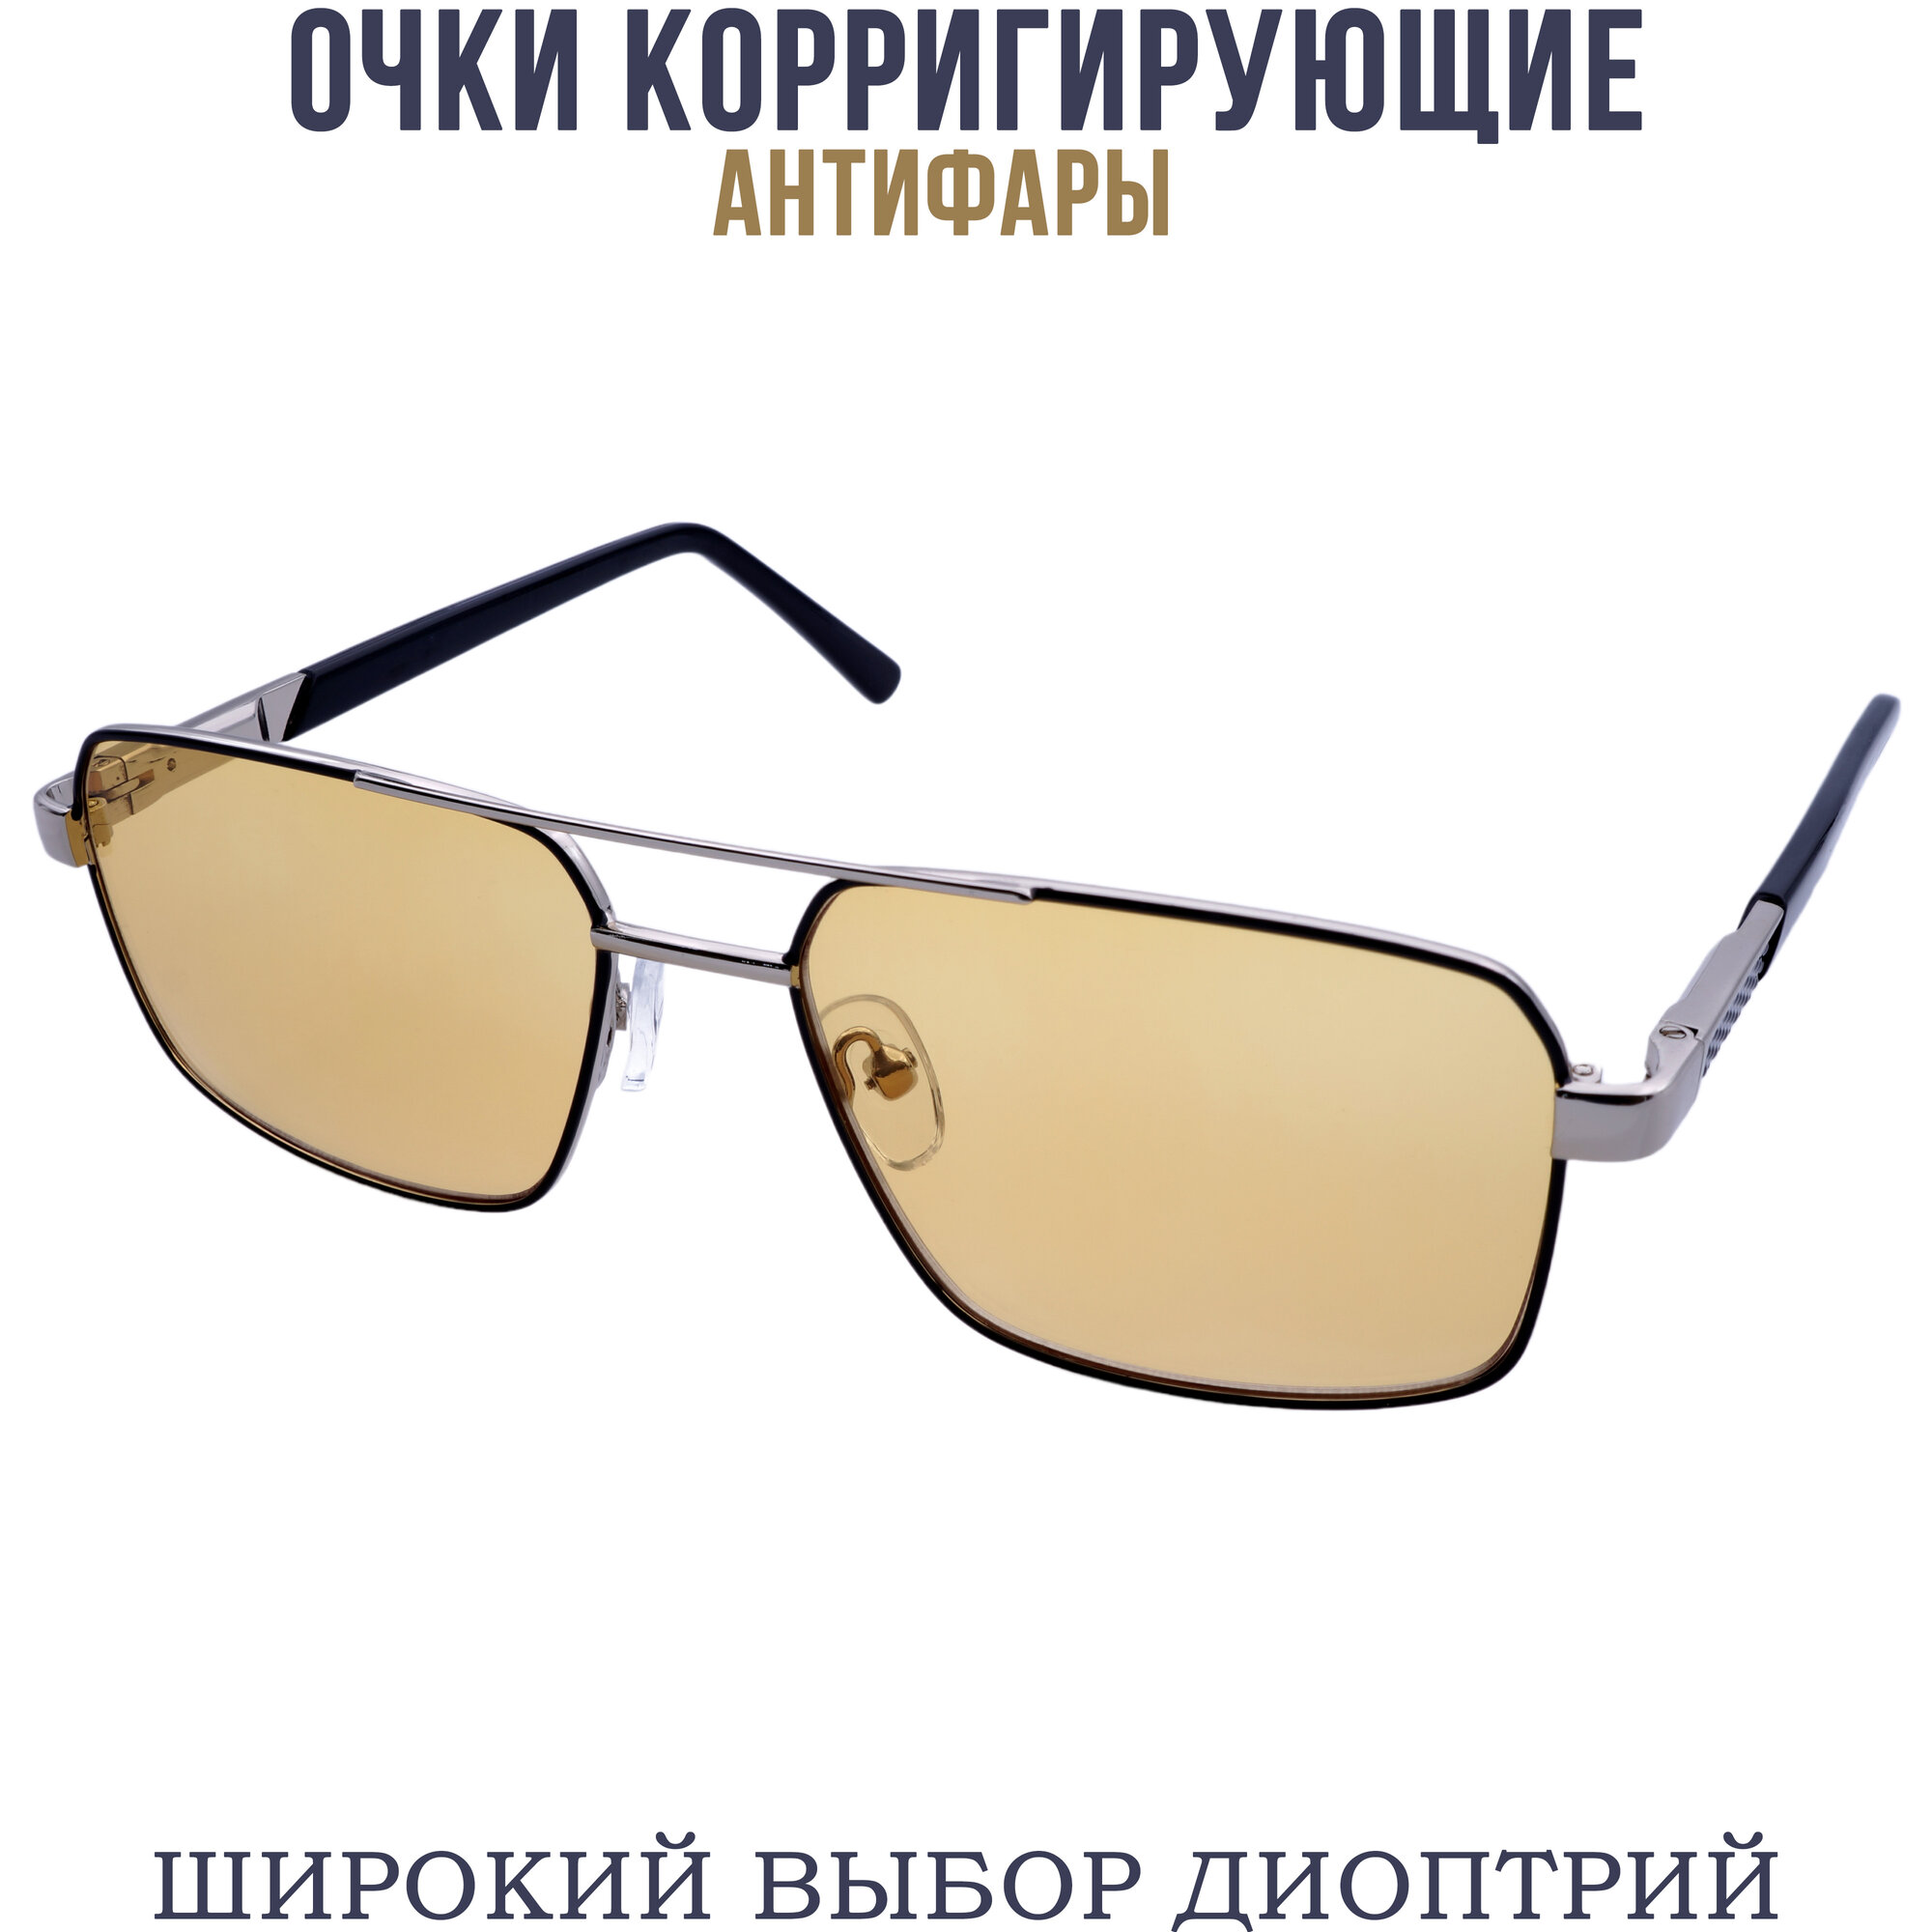 Готовые очки для зрения антифара с диоптриями pd62-64 бронзово-черный -0.50